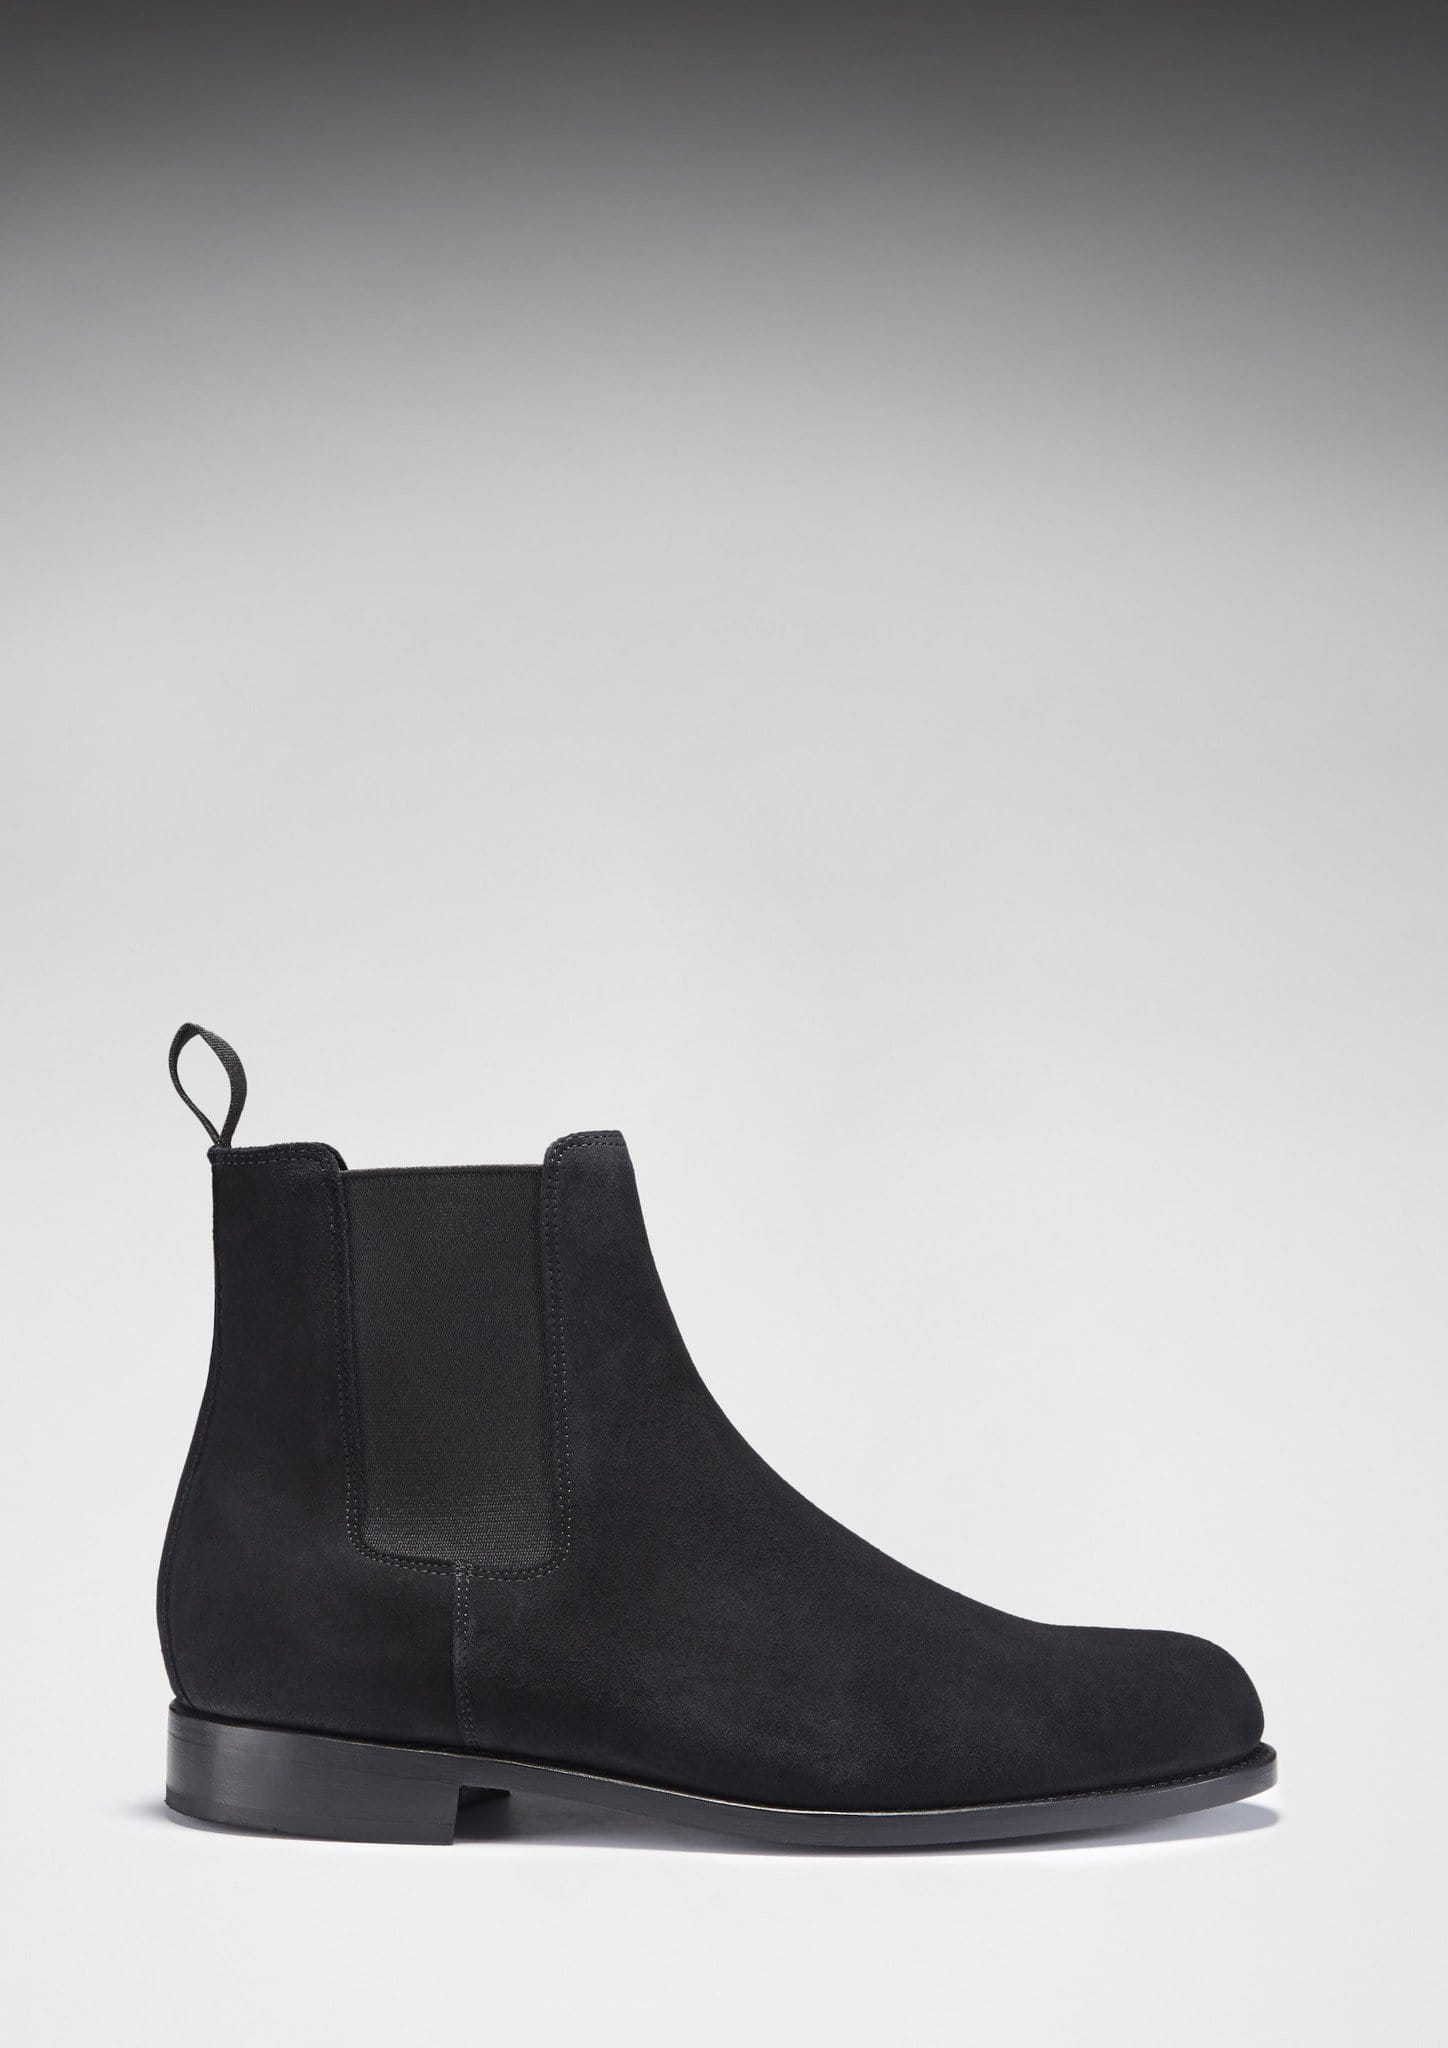 Chelsea-Stiefel aus schwarzem Wildleder, rahmengenähte Ledersohle